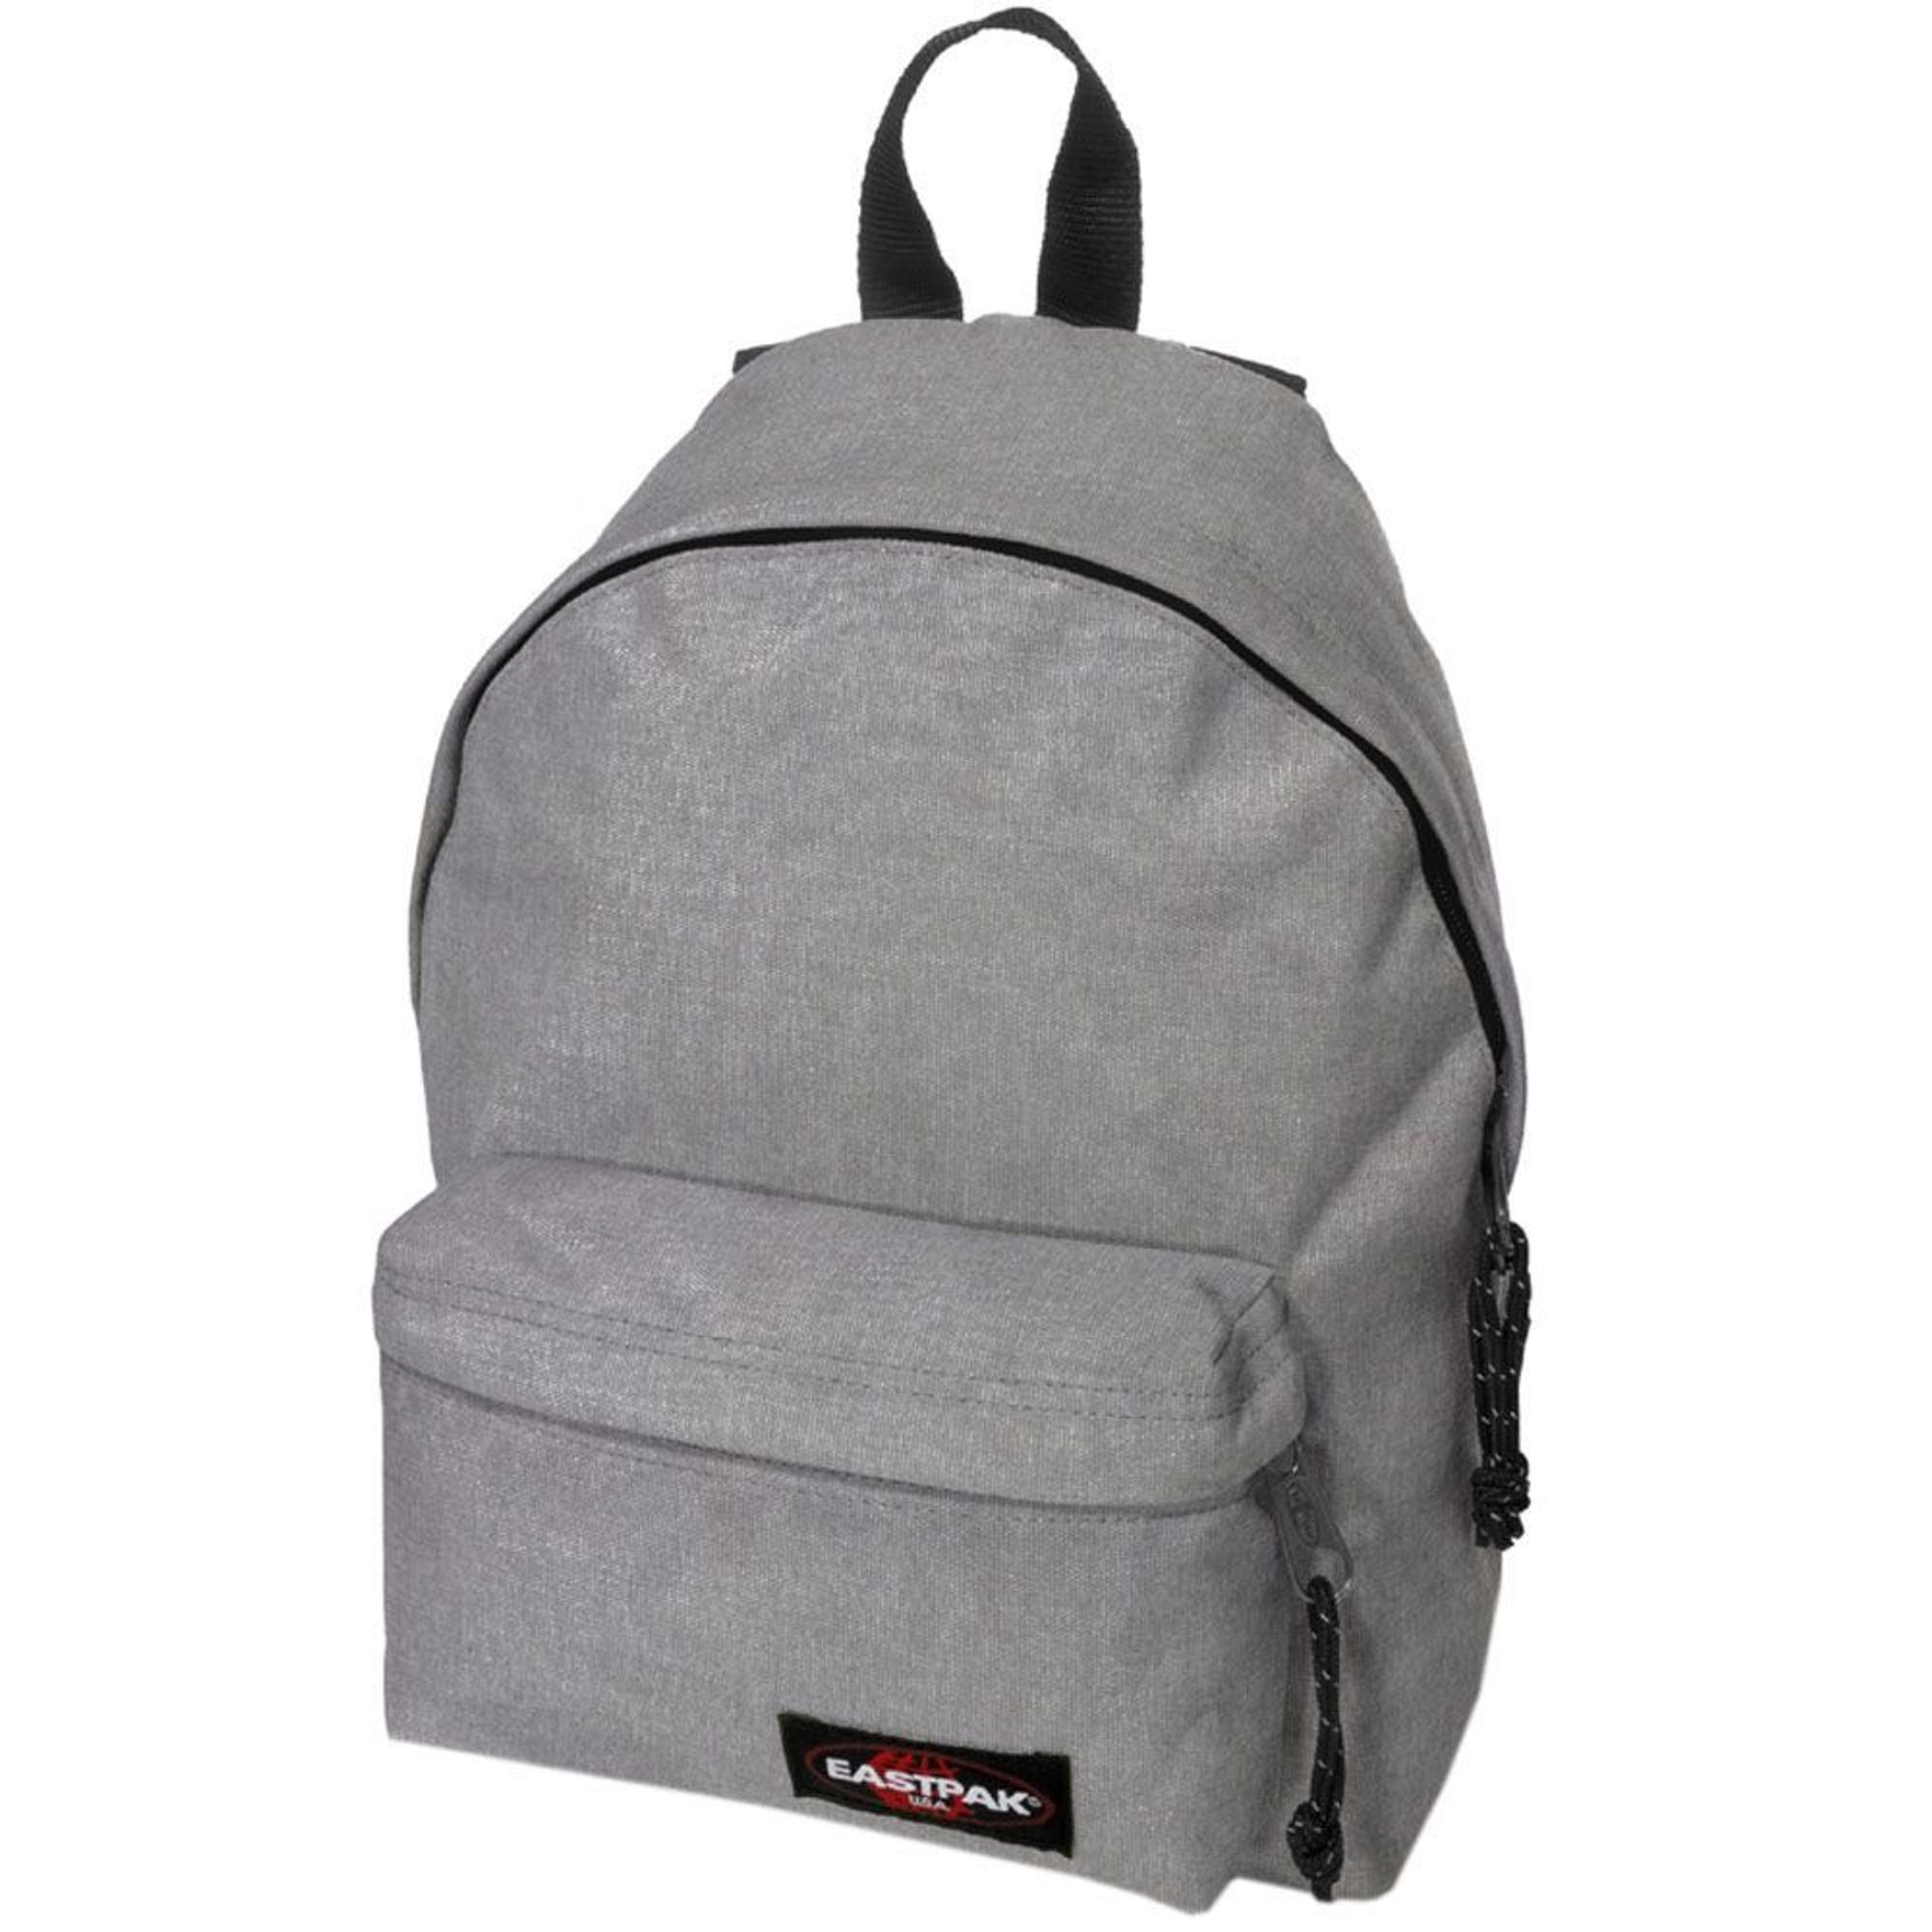 Рюкзак Eastpak Orbit 33 cm, цвет sunday grey